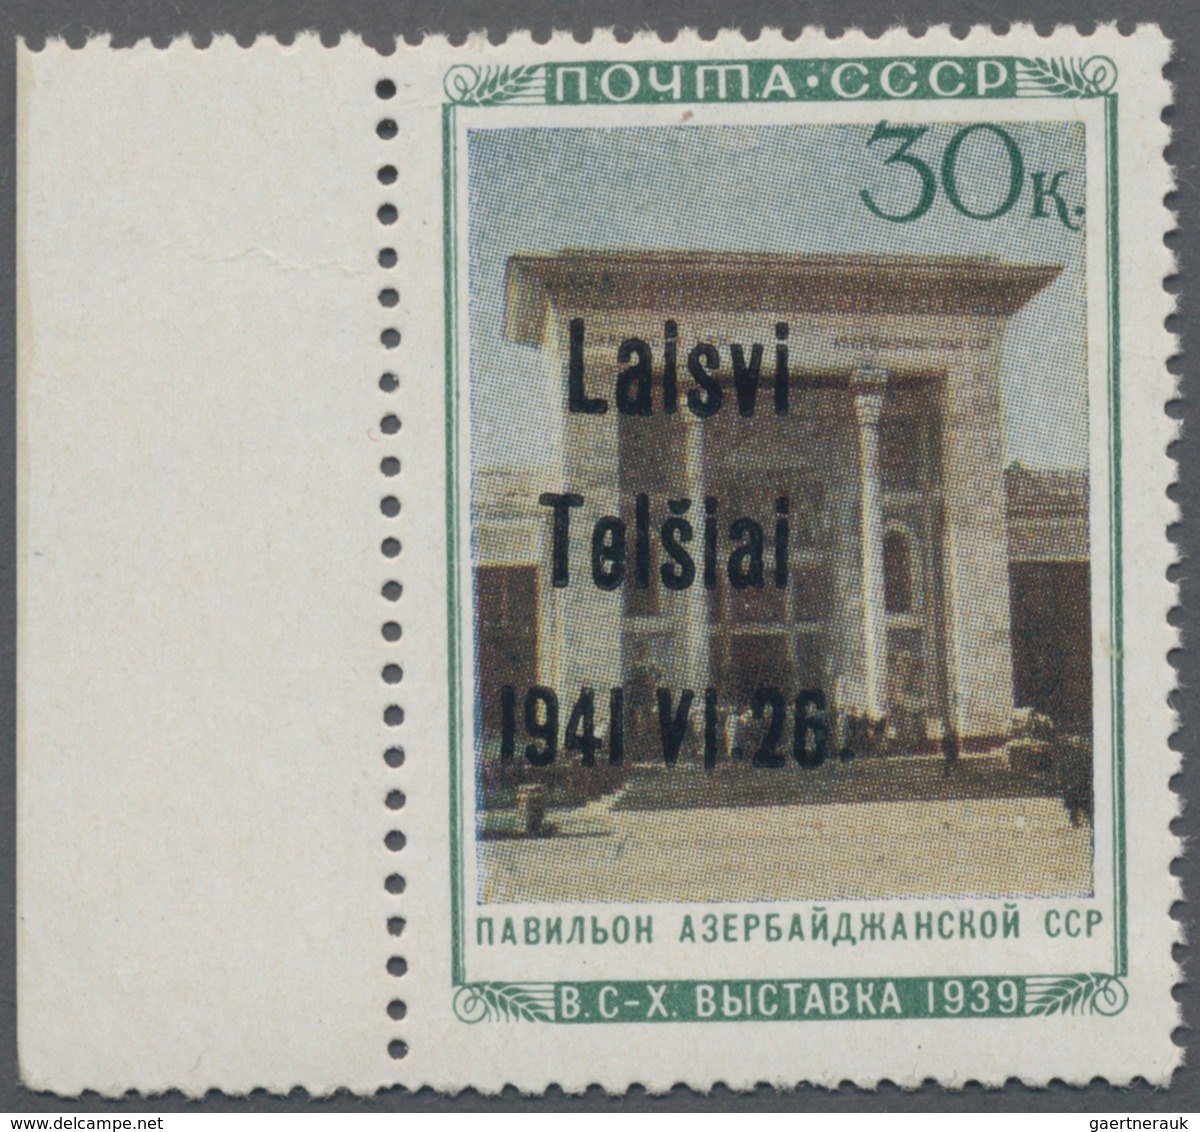 Dt. Besetzung II WK - Litauen - Telschen (Telsiai): 1941, 30 Kop. Landwirtschaftsausstellung Mit Auf - Occupazione 1938 – 45